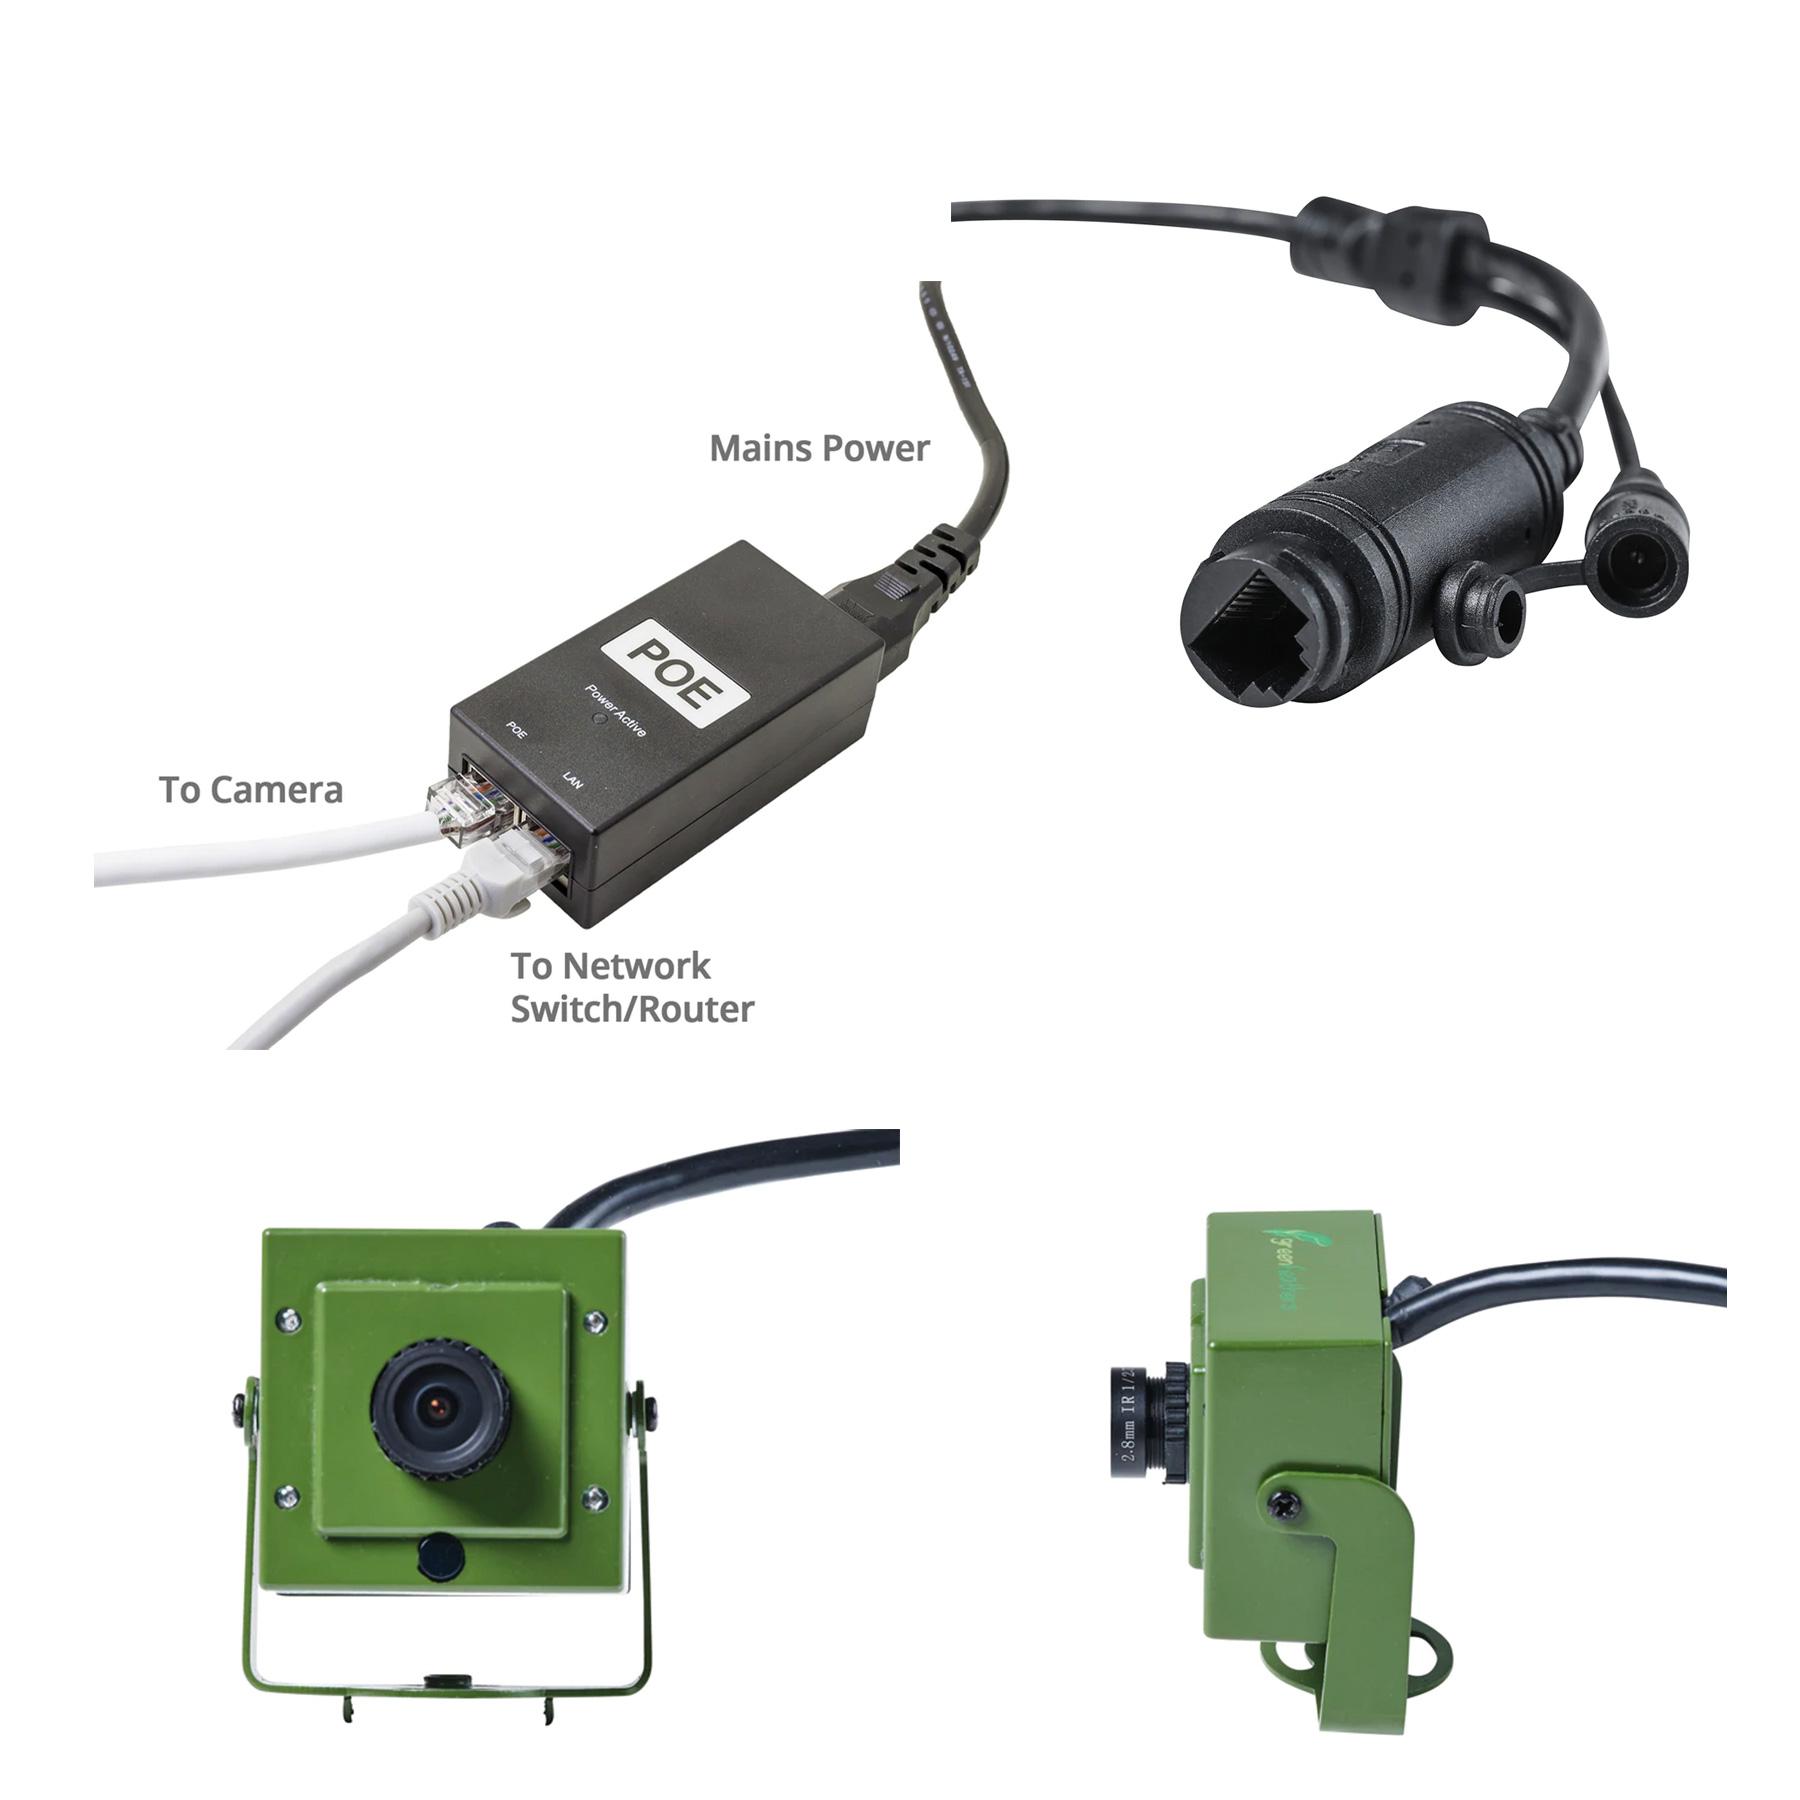 Green Feathers HD kamera med netværkskabel til redekasser